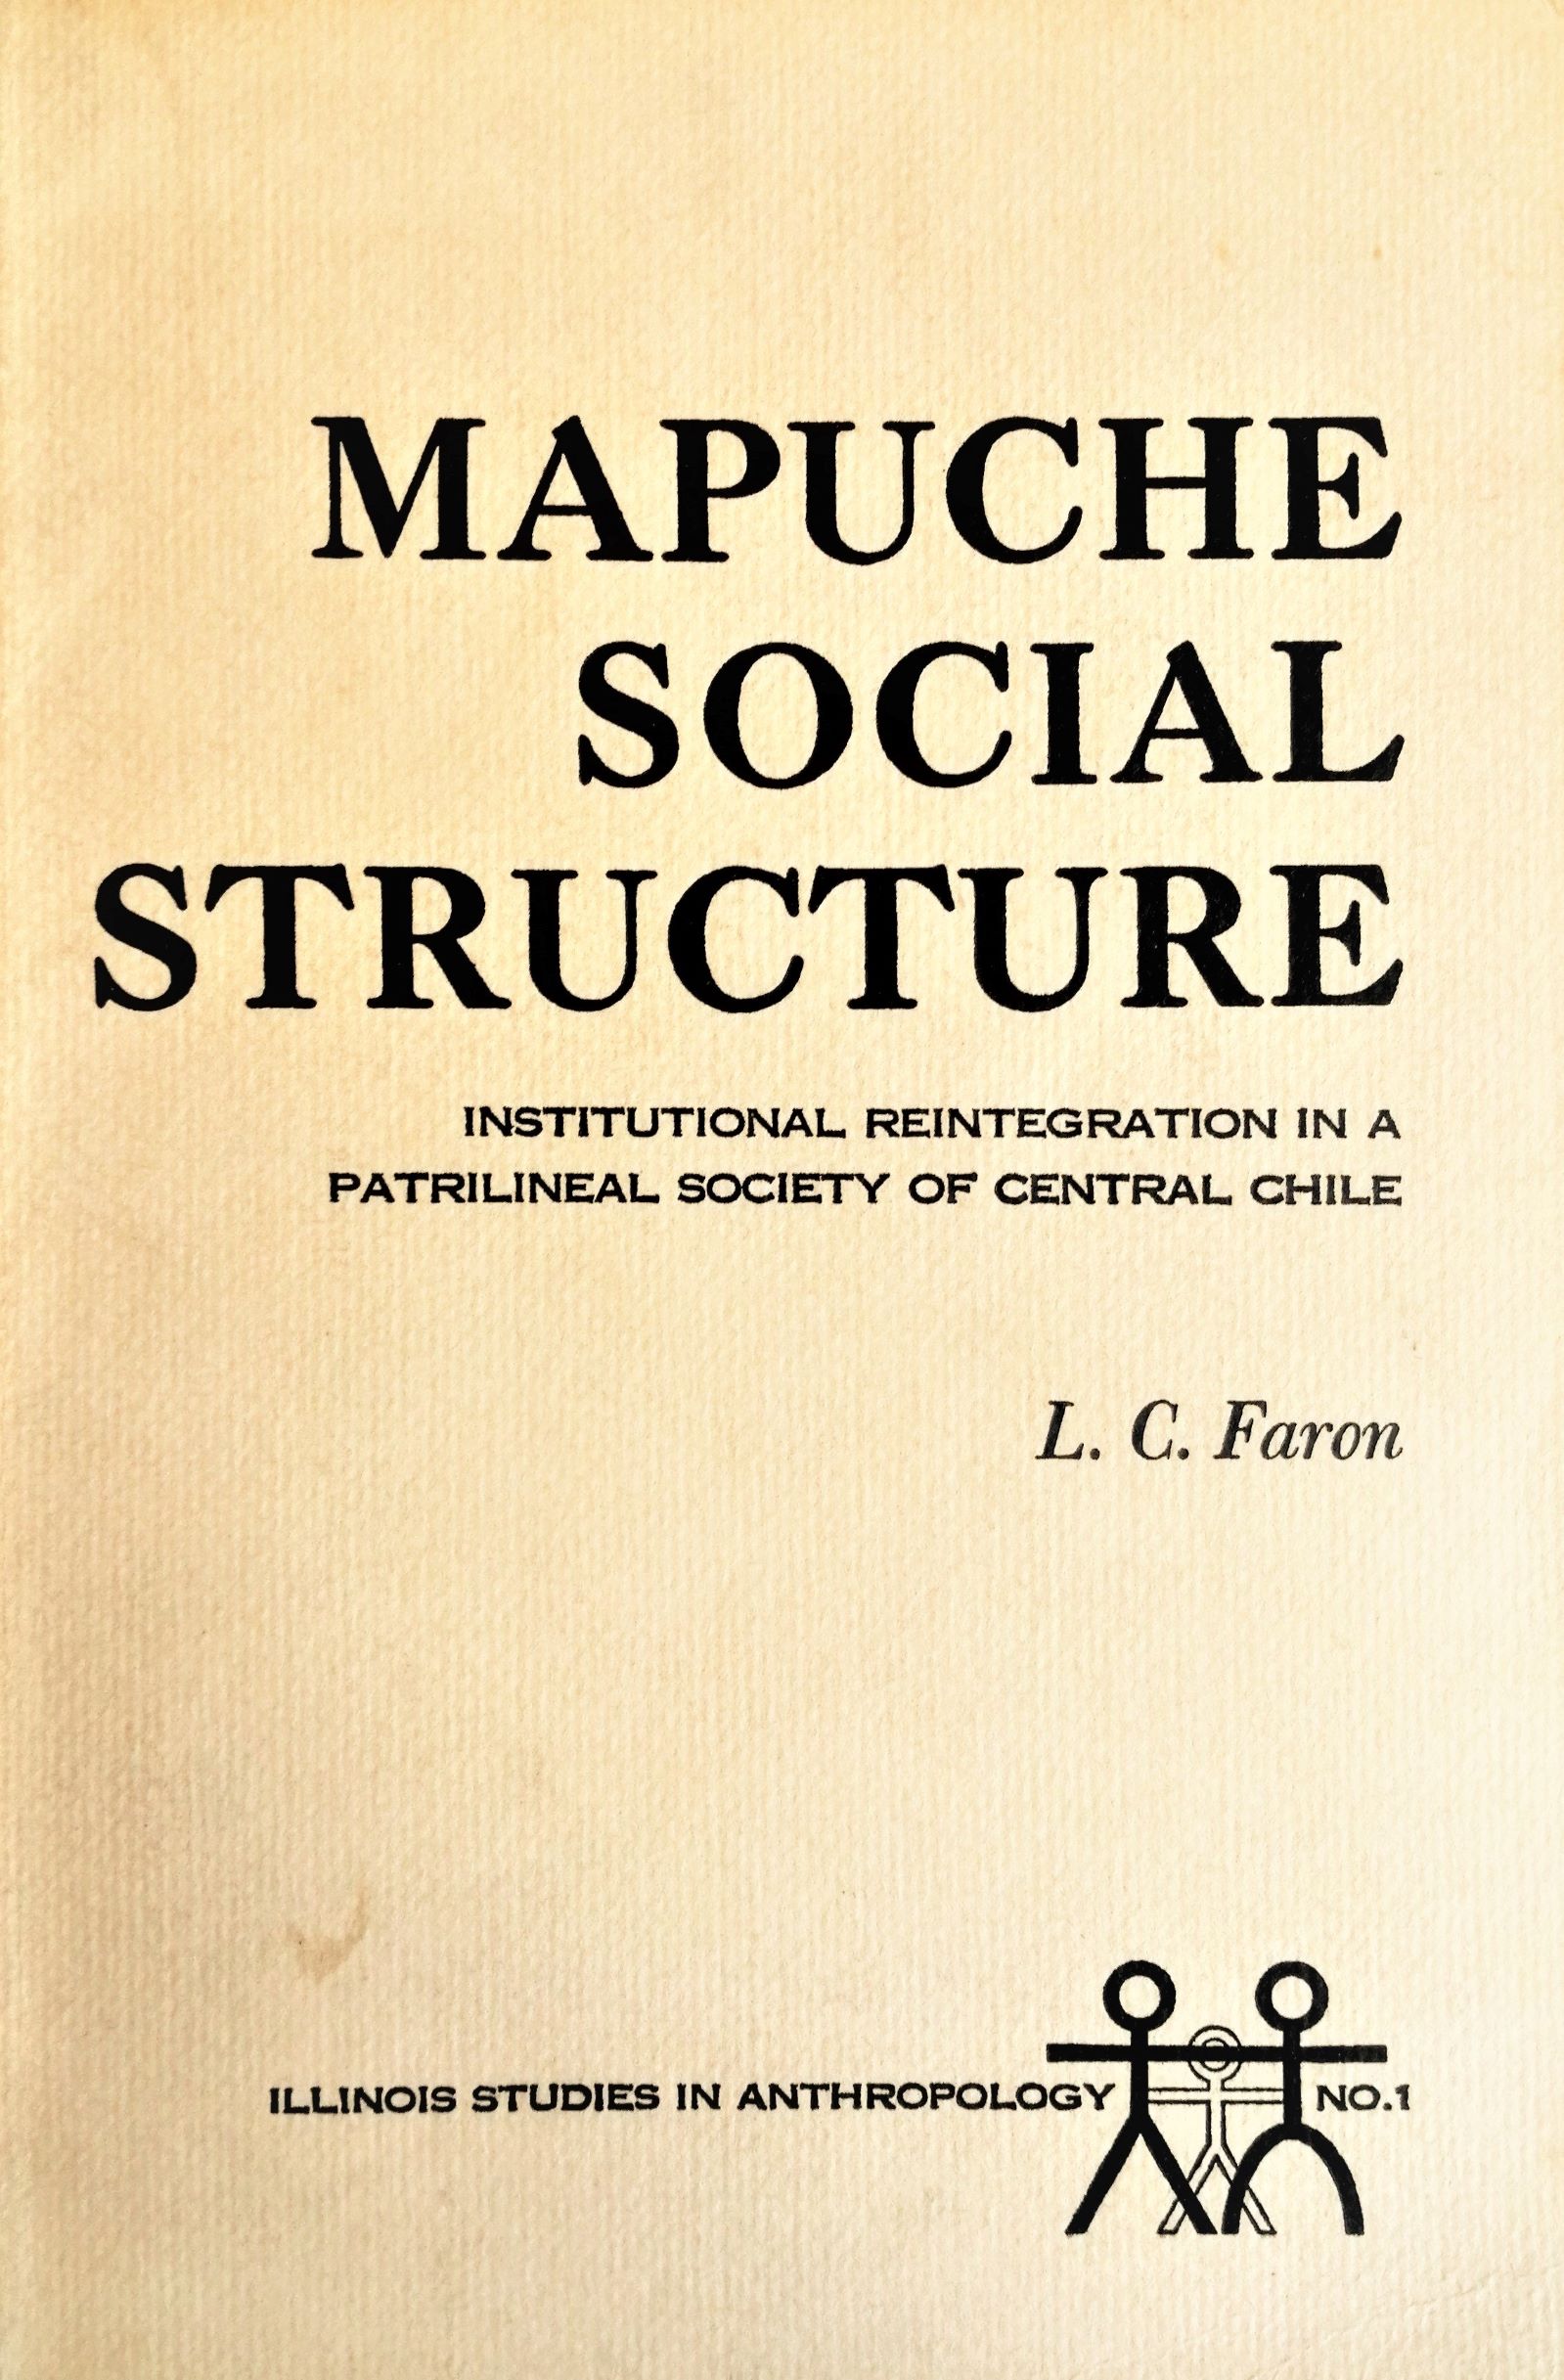 L. C. Faron - Mapuche Social Structure